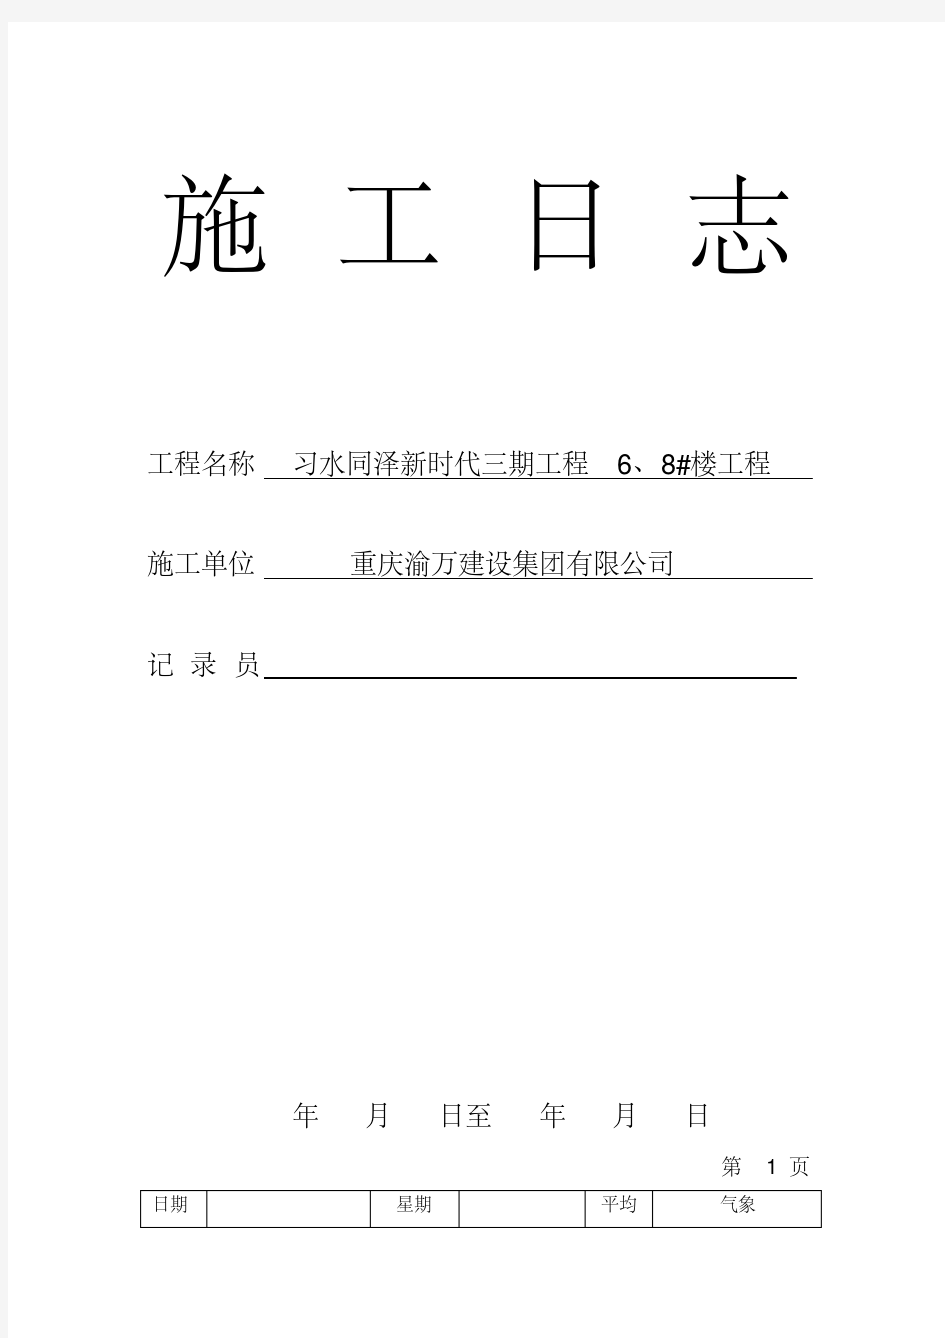 施工日志表格版.pdf